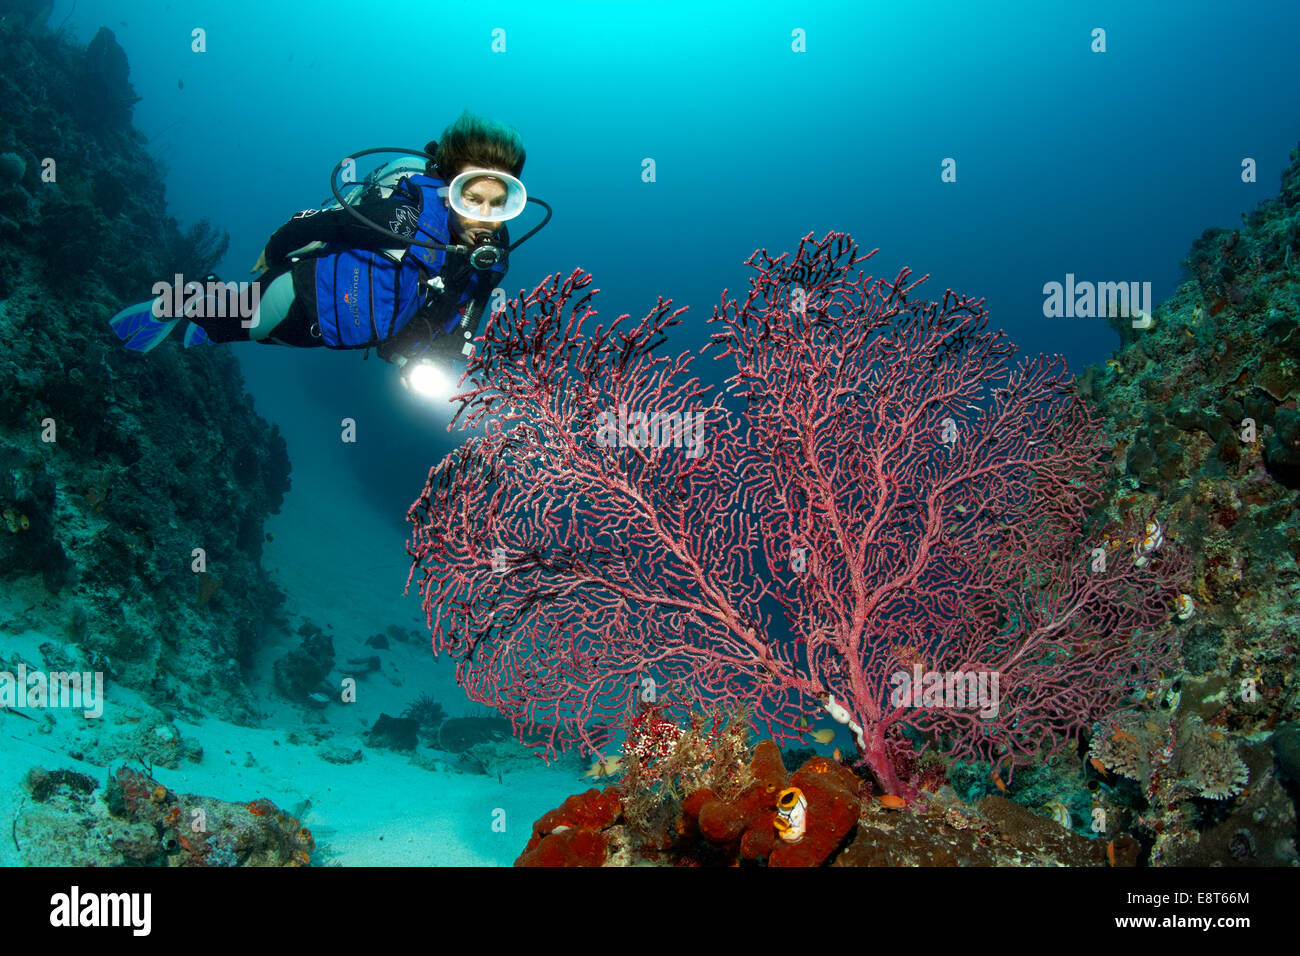 Femme regardant un plongeur autonome, gorgones, coraux mous, gorgones, UNESCO World Heritage Site, Grande Barrière de Corail, Australie Banque D'Images